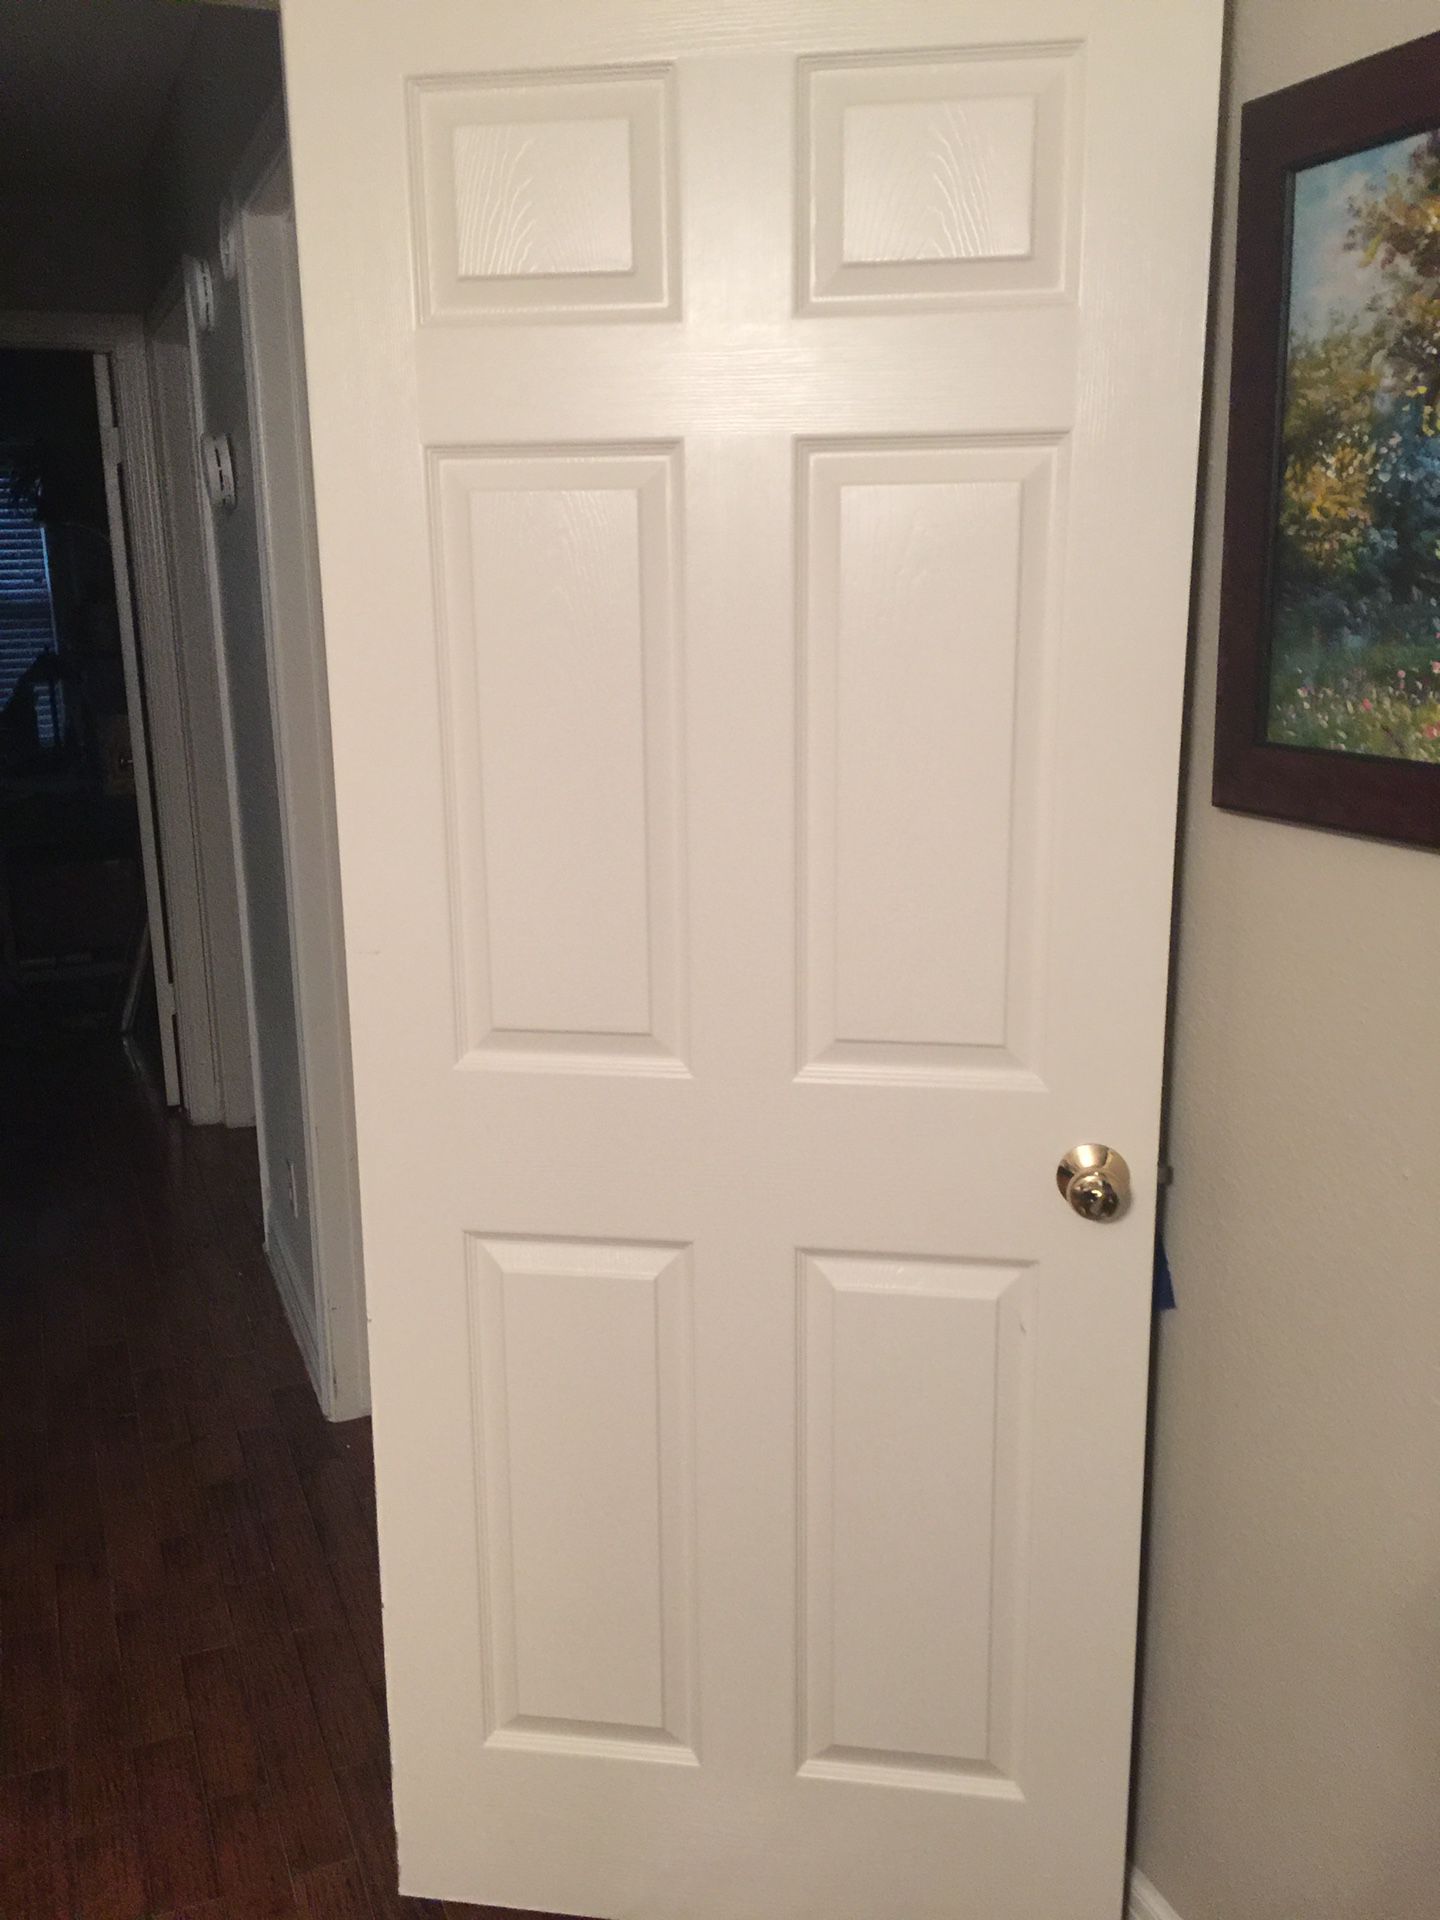 Door with knob